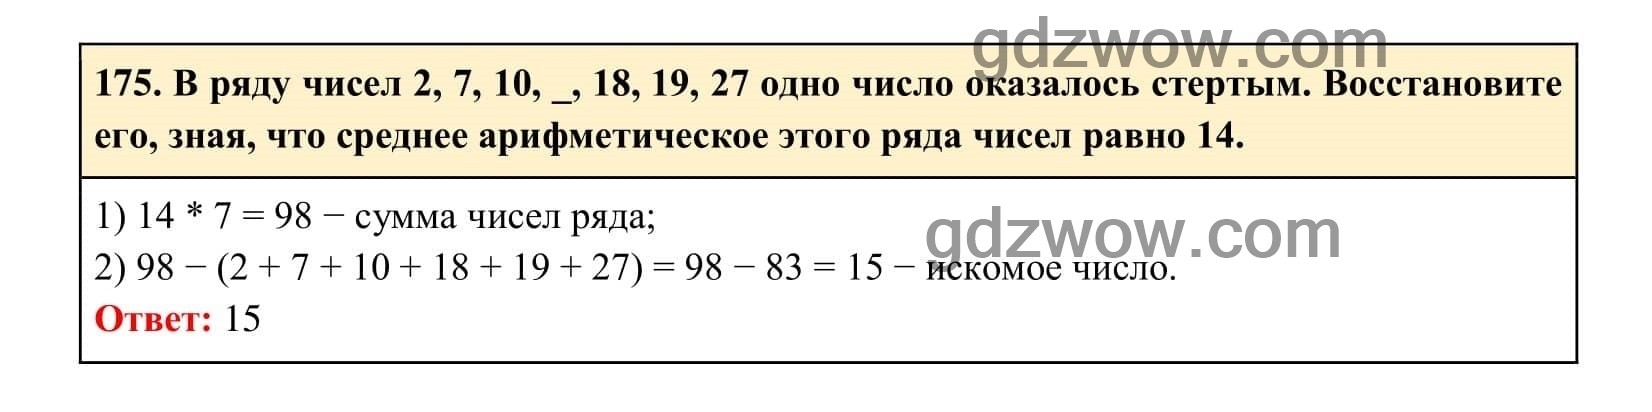 Упражнение 175 - ГДЗ по Алгебре 7 класс Учебник Макарычев (решебник) - GDZwow